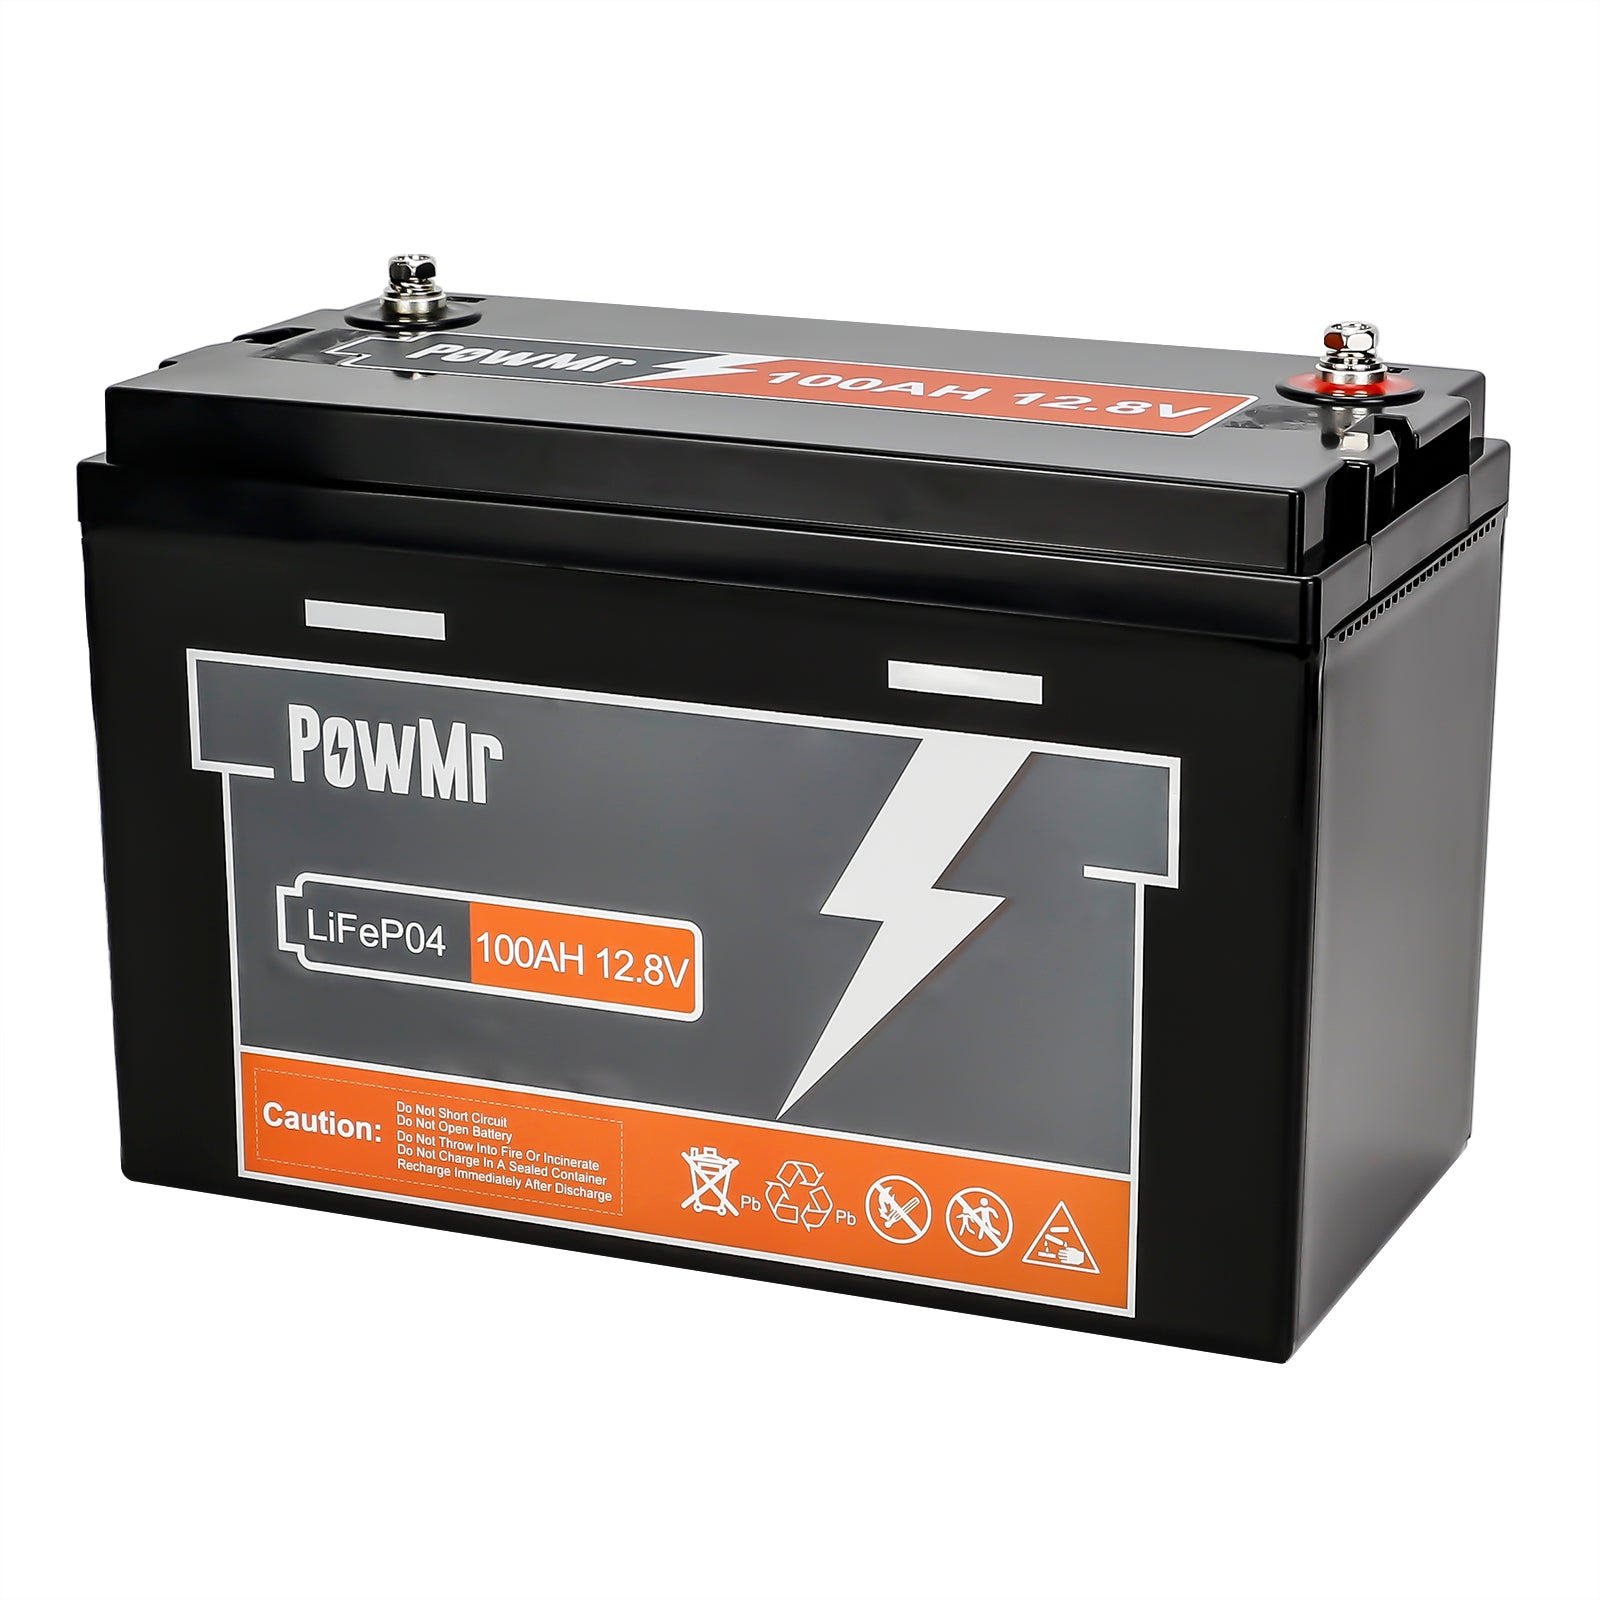 100ah 12.8v LiFePO4 energy storage battery